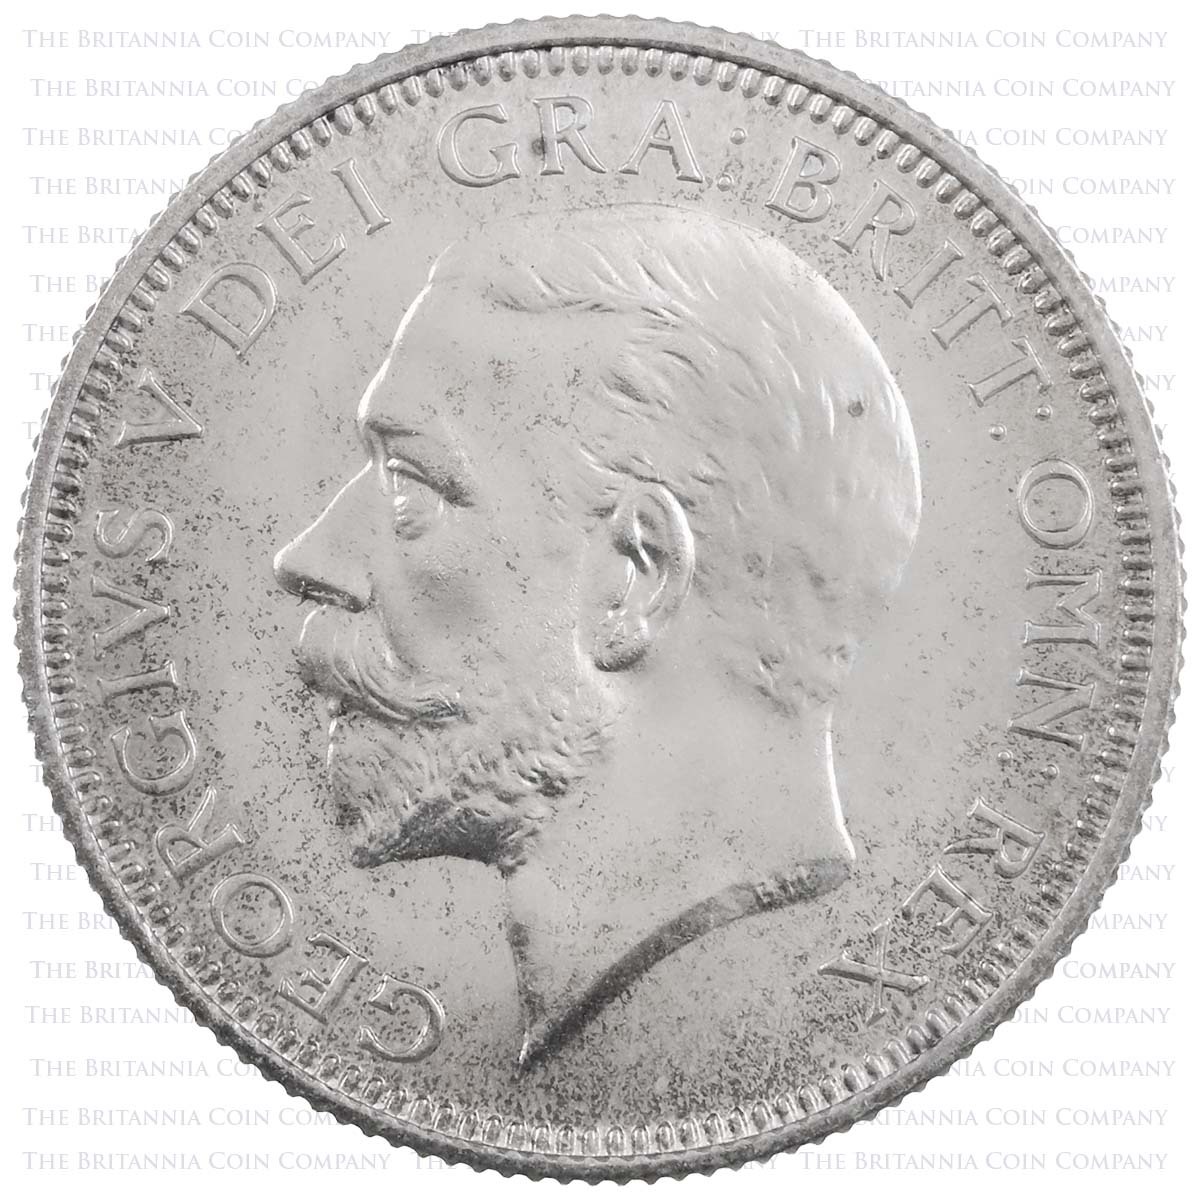 1927 George V Silver Specimen Proof Set Shilling Obverse